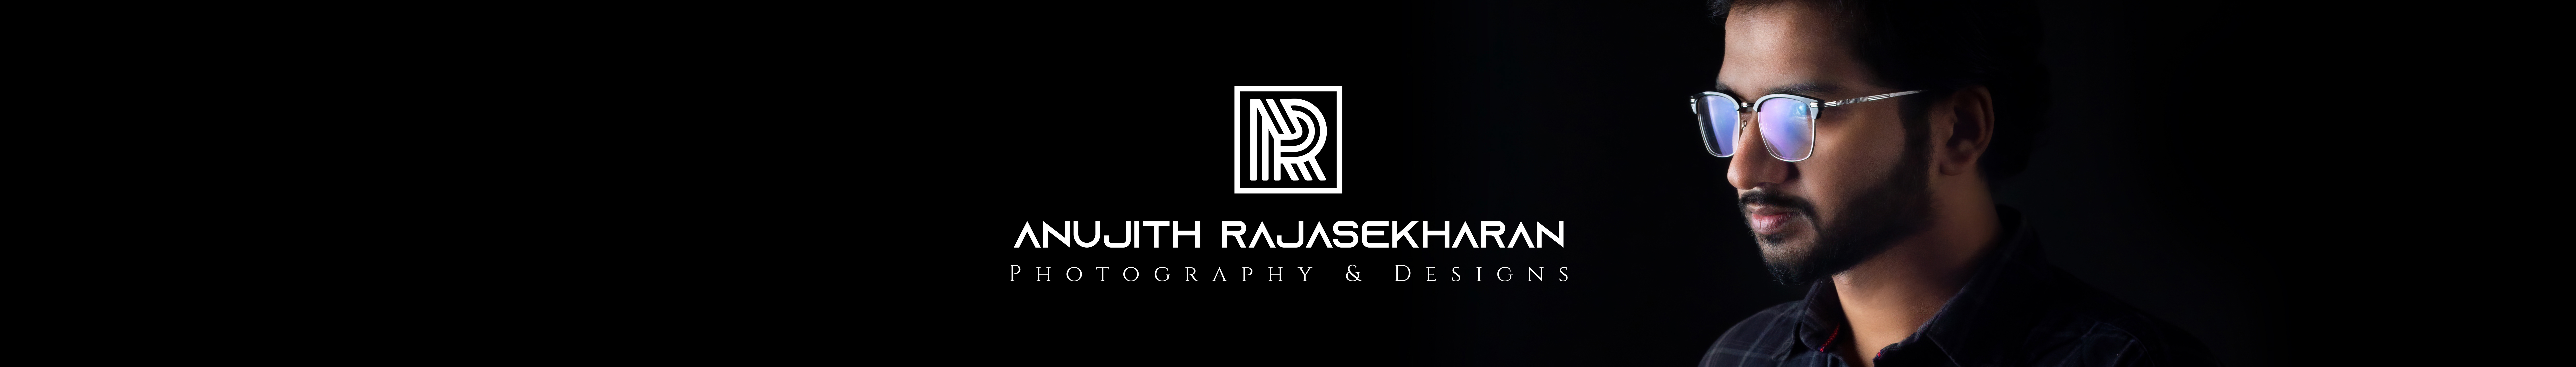 Banner de perfil de Anujith Rajasekharan